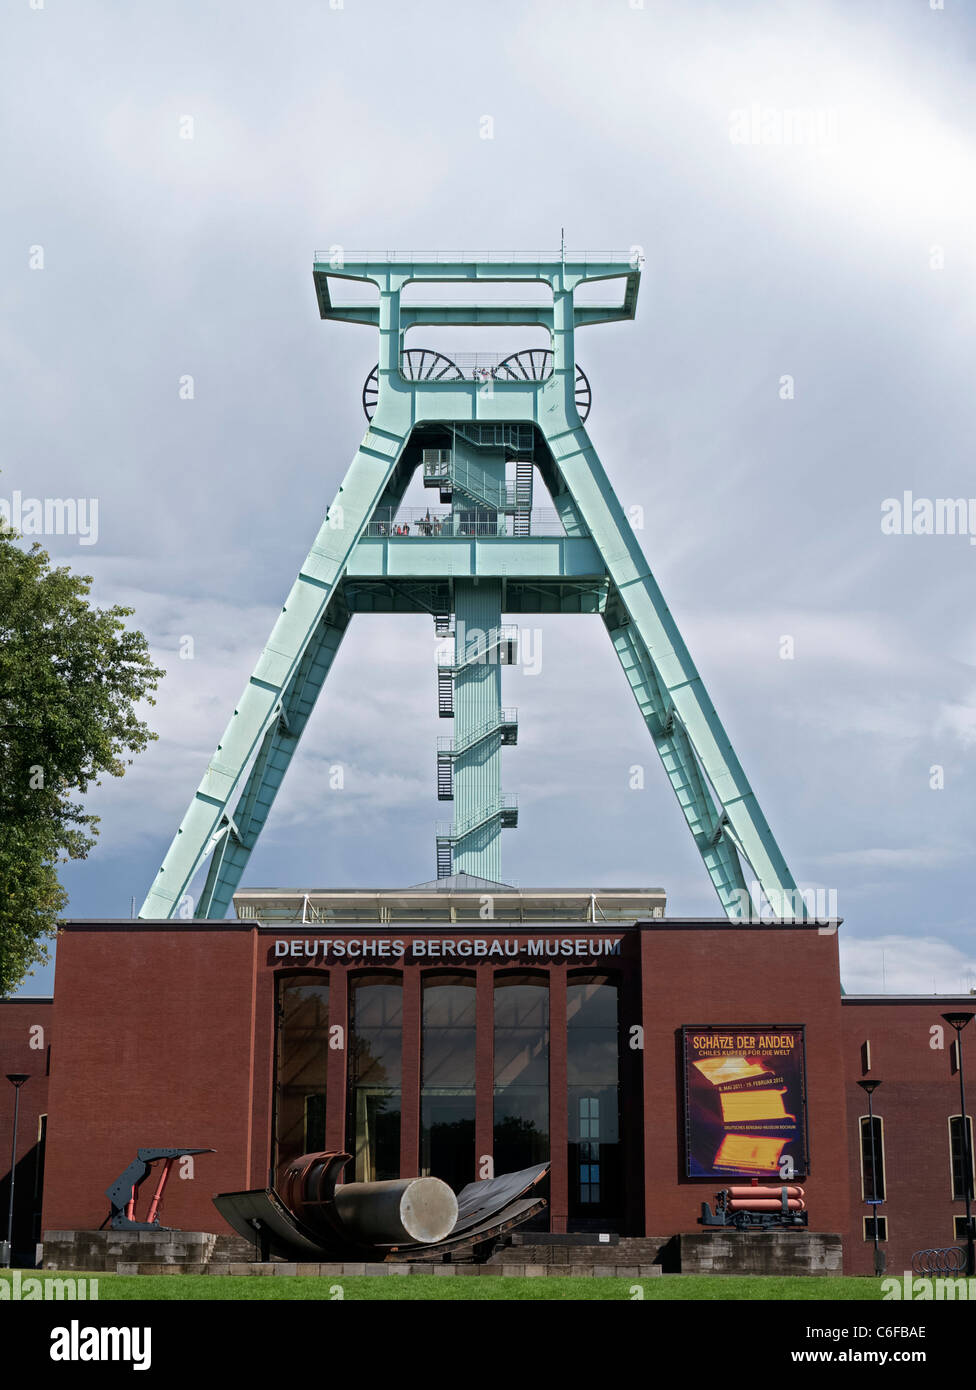 Le Deutsches Bergbau-Museum ou Musée allemand de la mine de Bochum Allemagne Banque D'Images